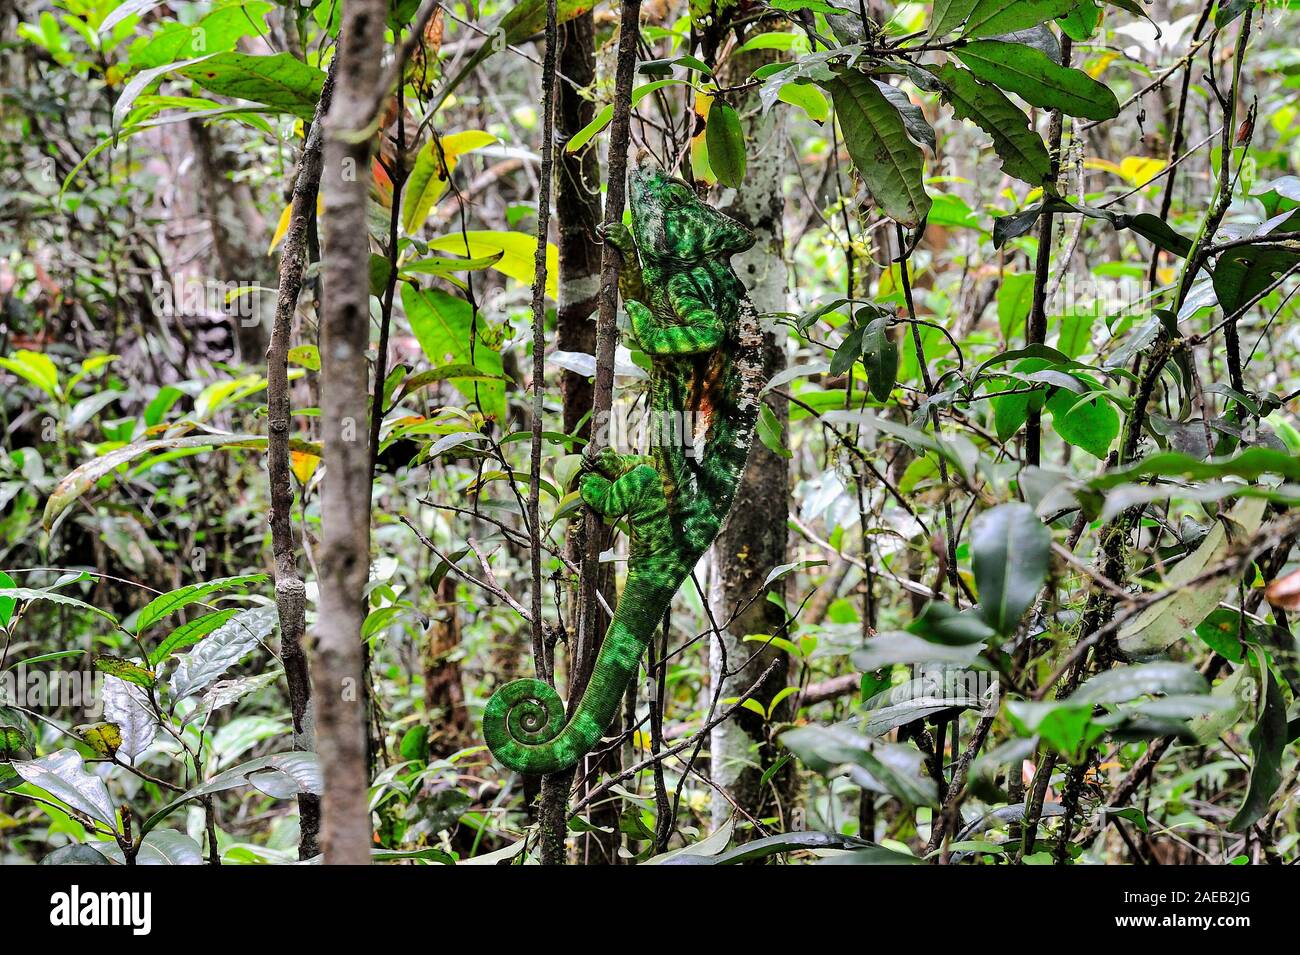 Maestro del travestimento, Parson's camaleonte. Potrebbe individuare questo animale nella foresta di pioggia? Foto Stock